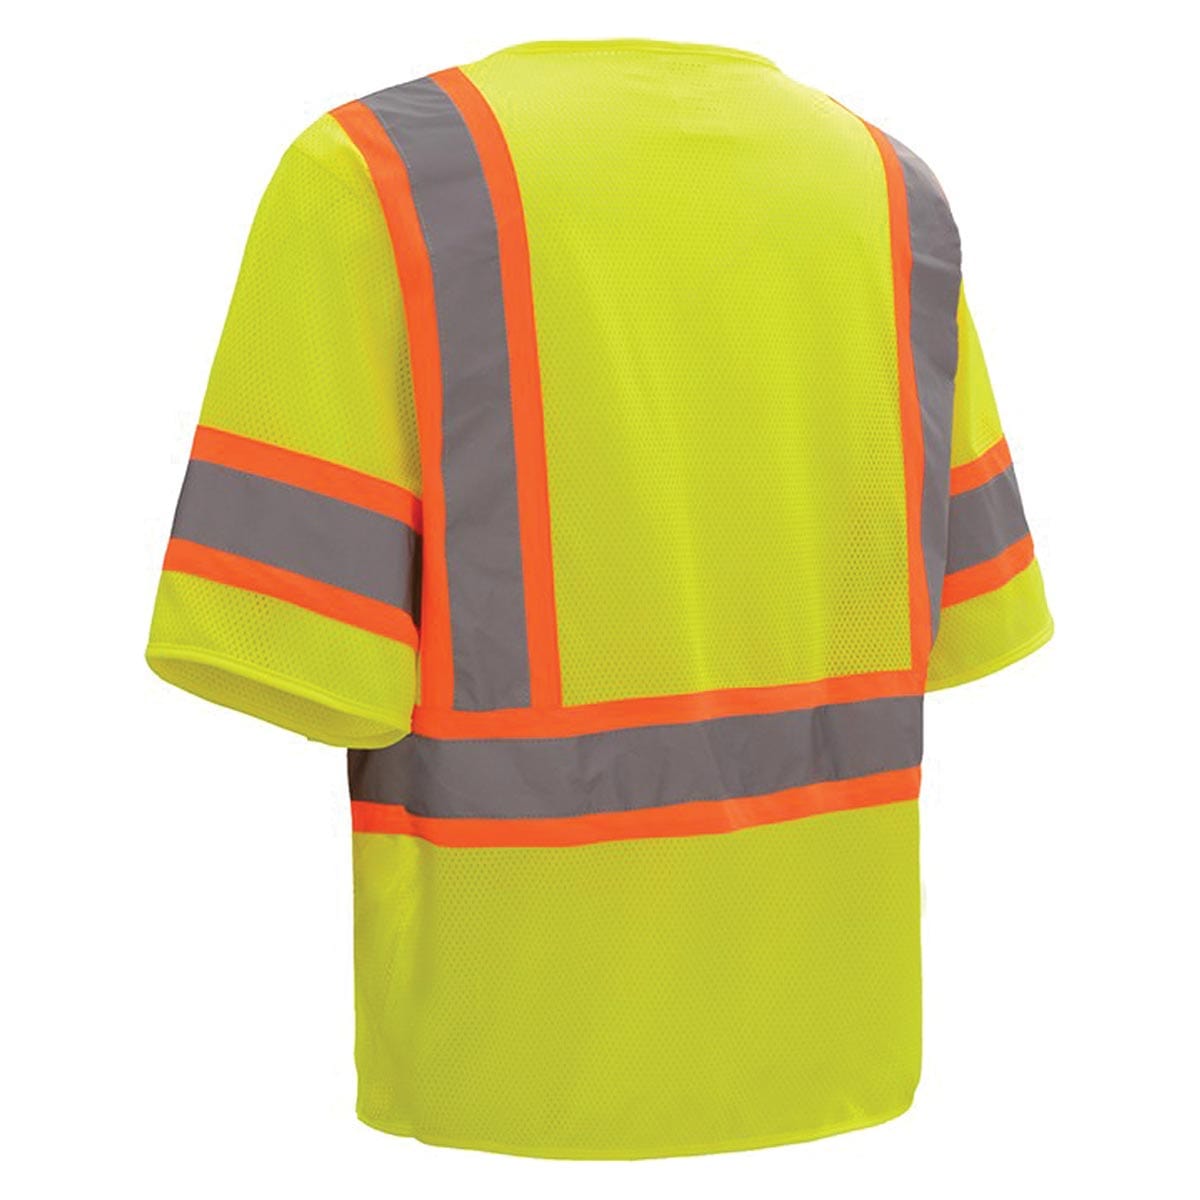 GSS Safety ANSI 3 Standard Two Tone Mesh Hi-Vis Zipper Safety Vest